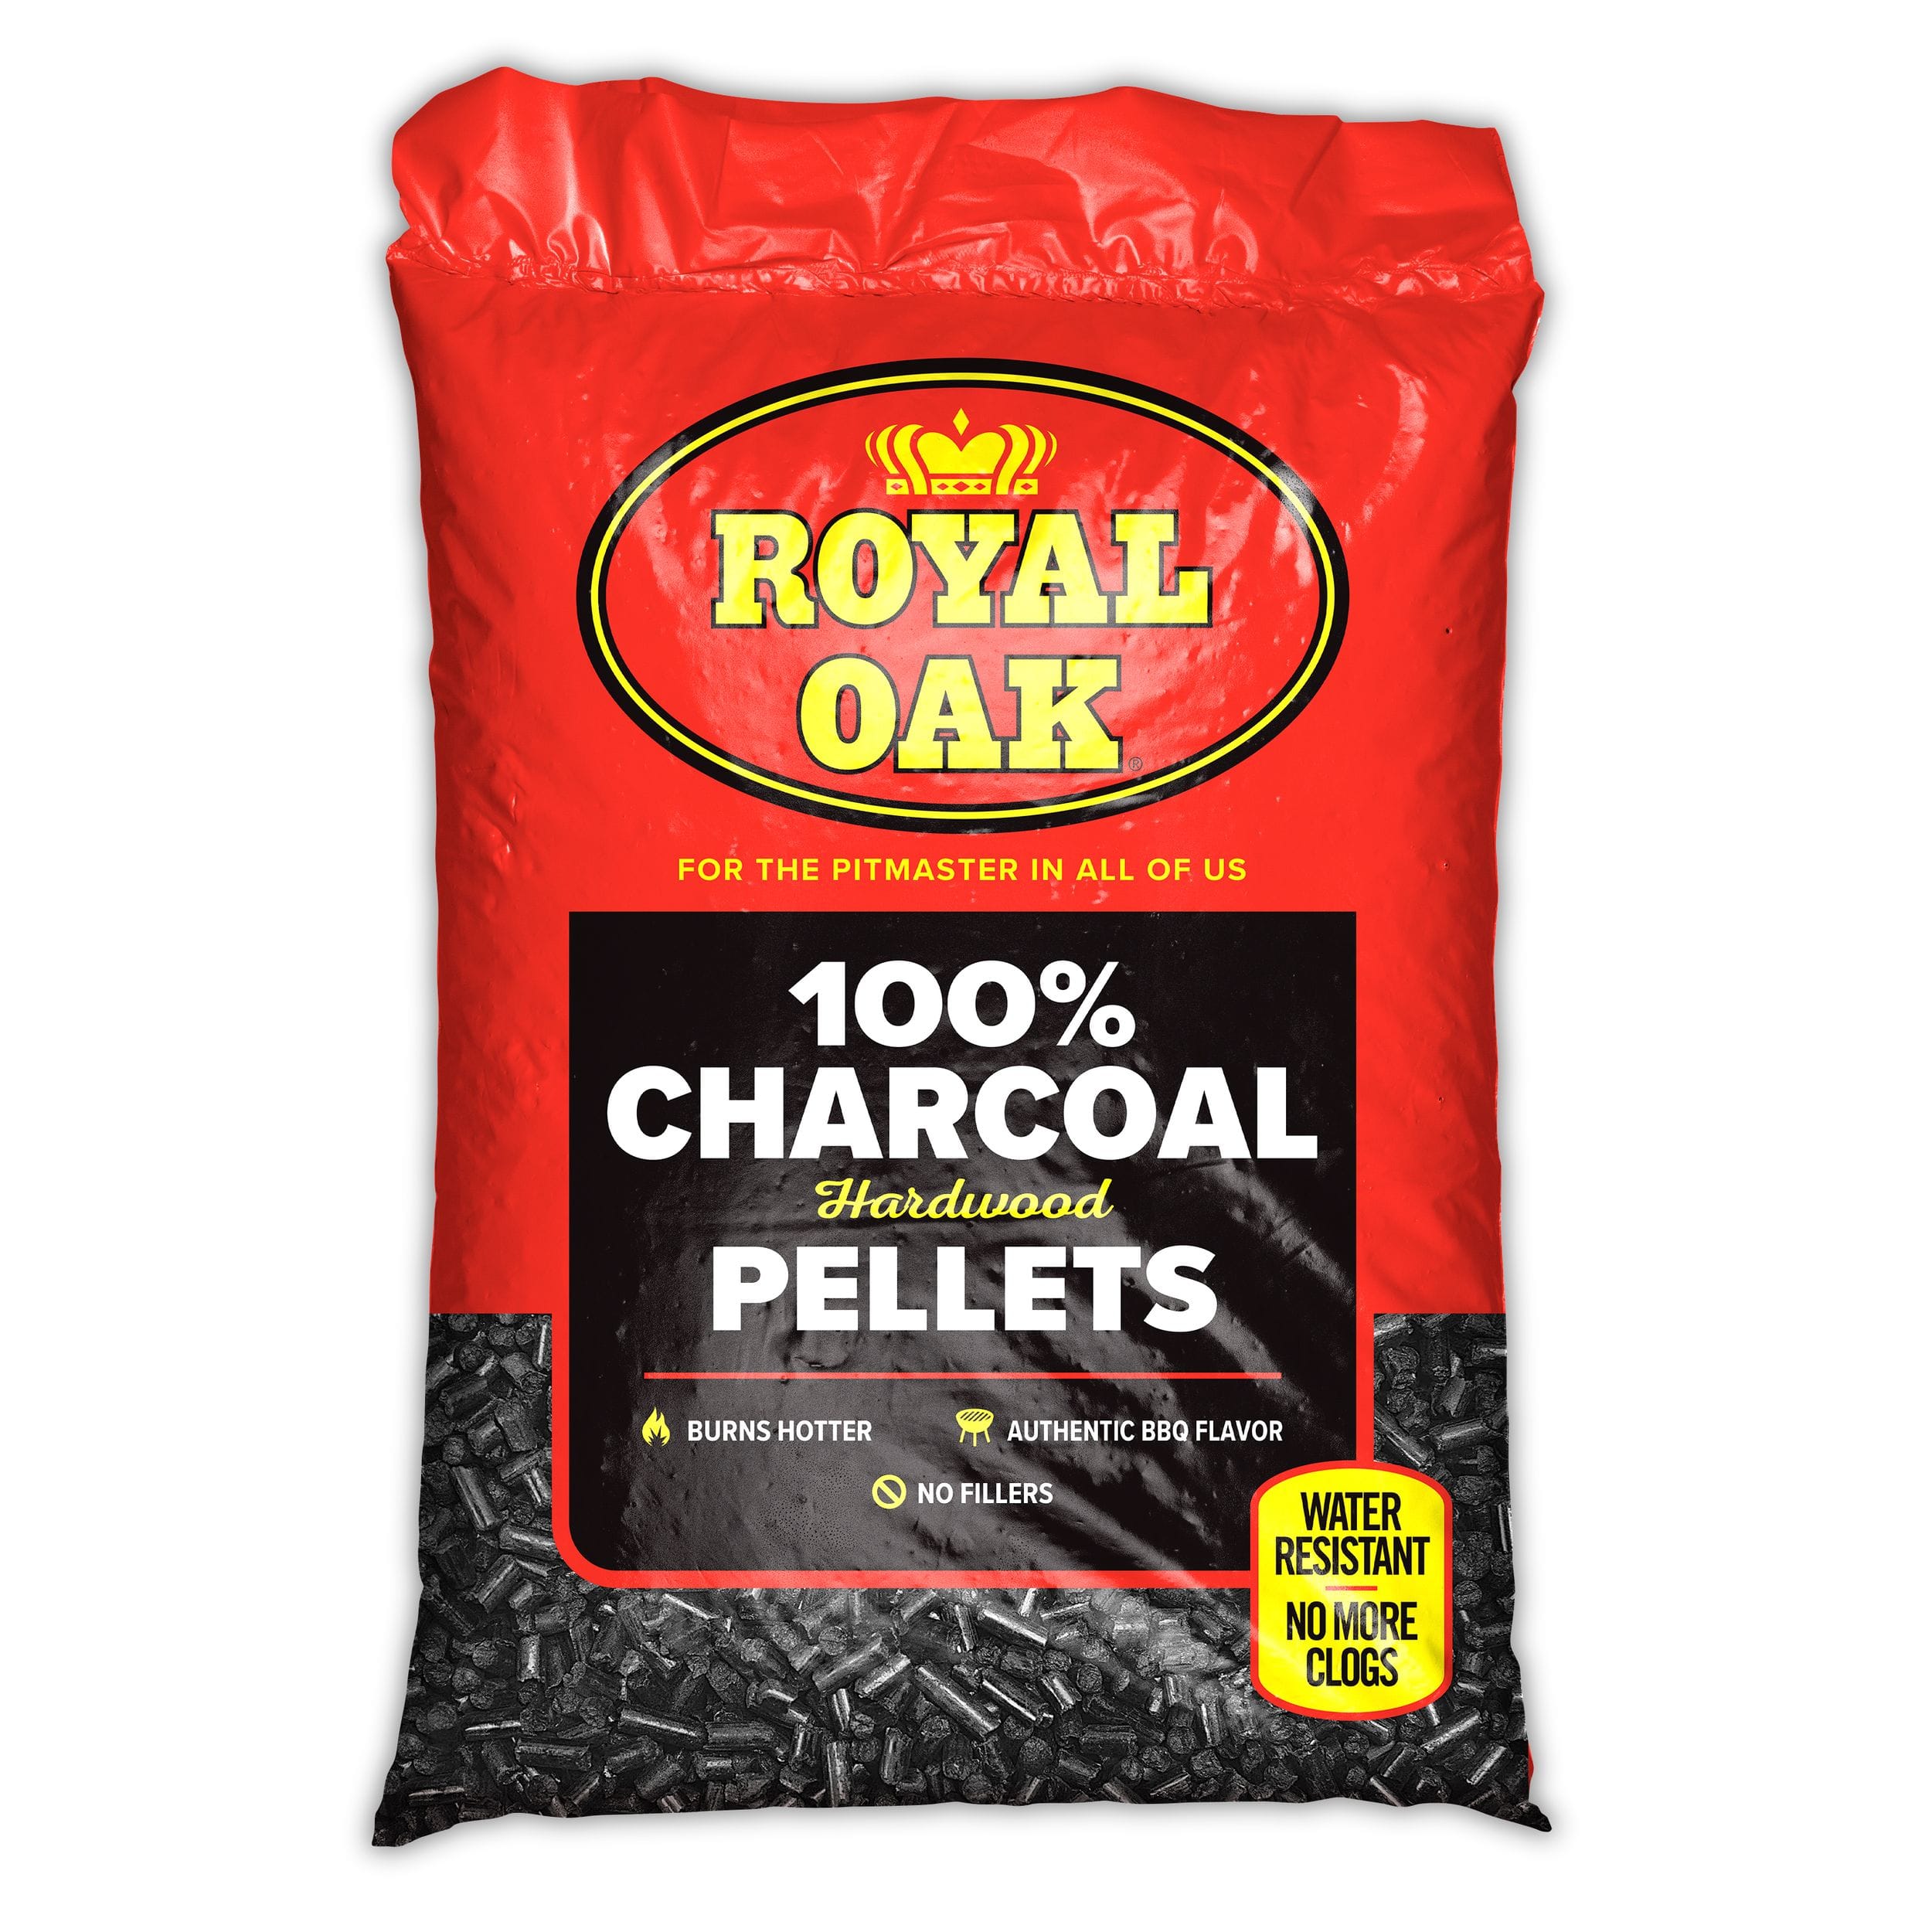 Royal Oak Charcoal Pellets